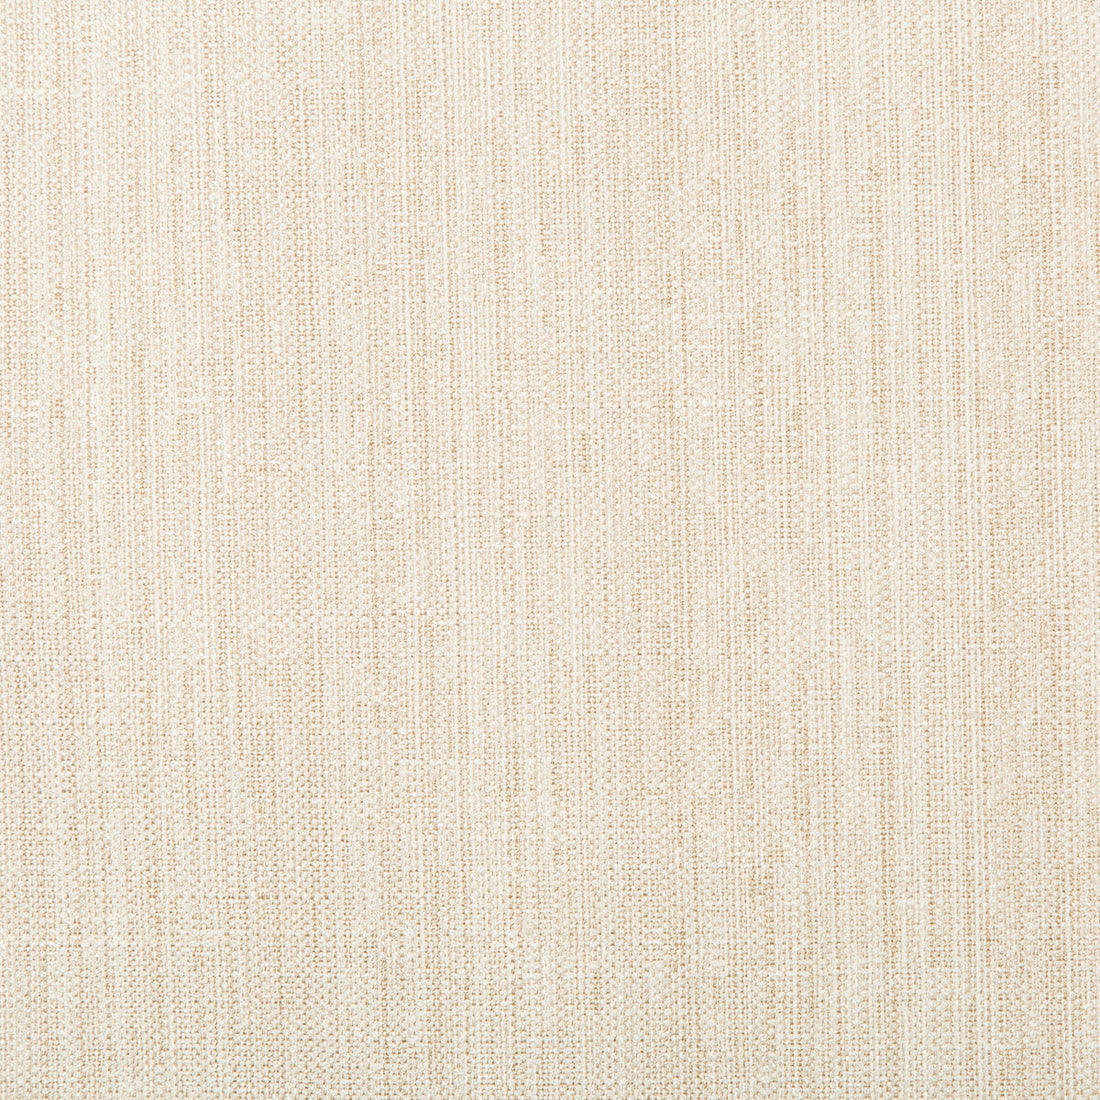 Kravet Basics fabric in 4665-1 color - pattern 4665.1.0 - by Kravet Basics